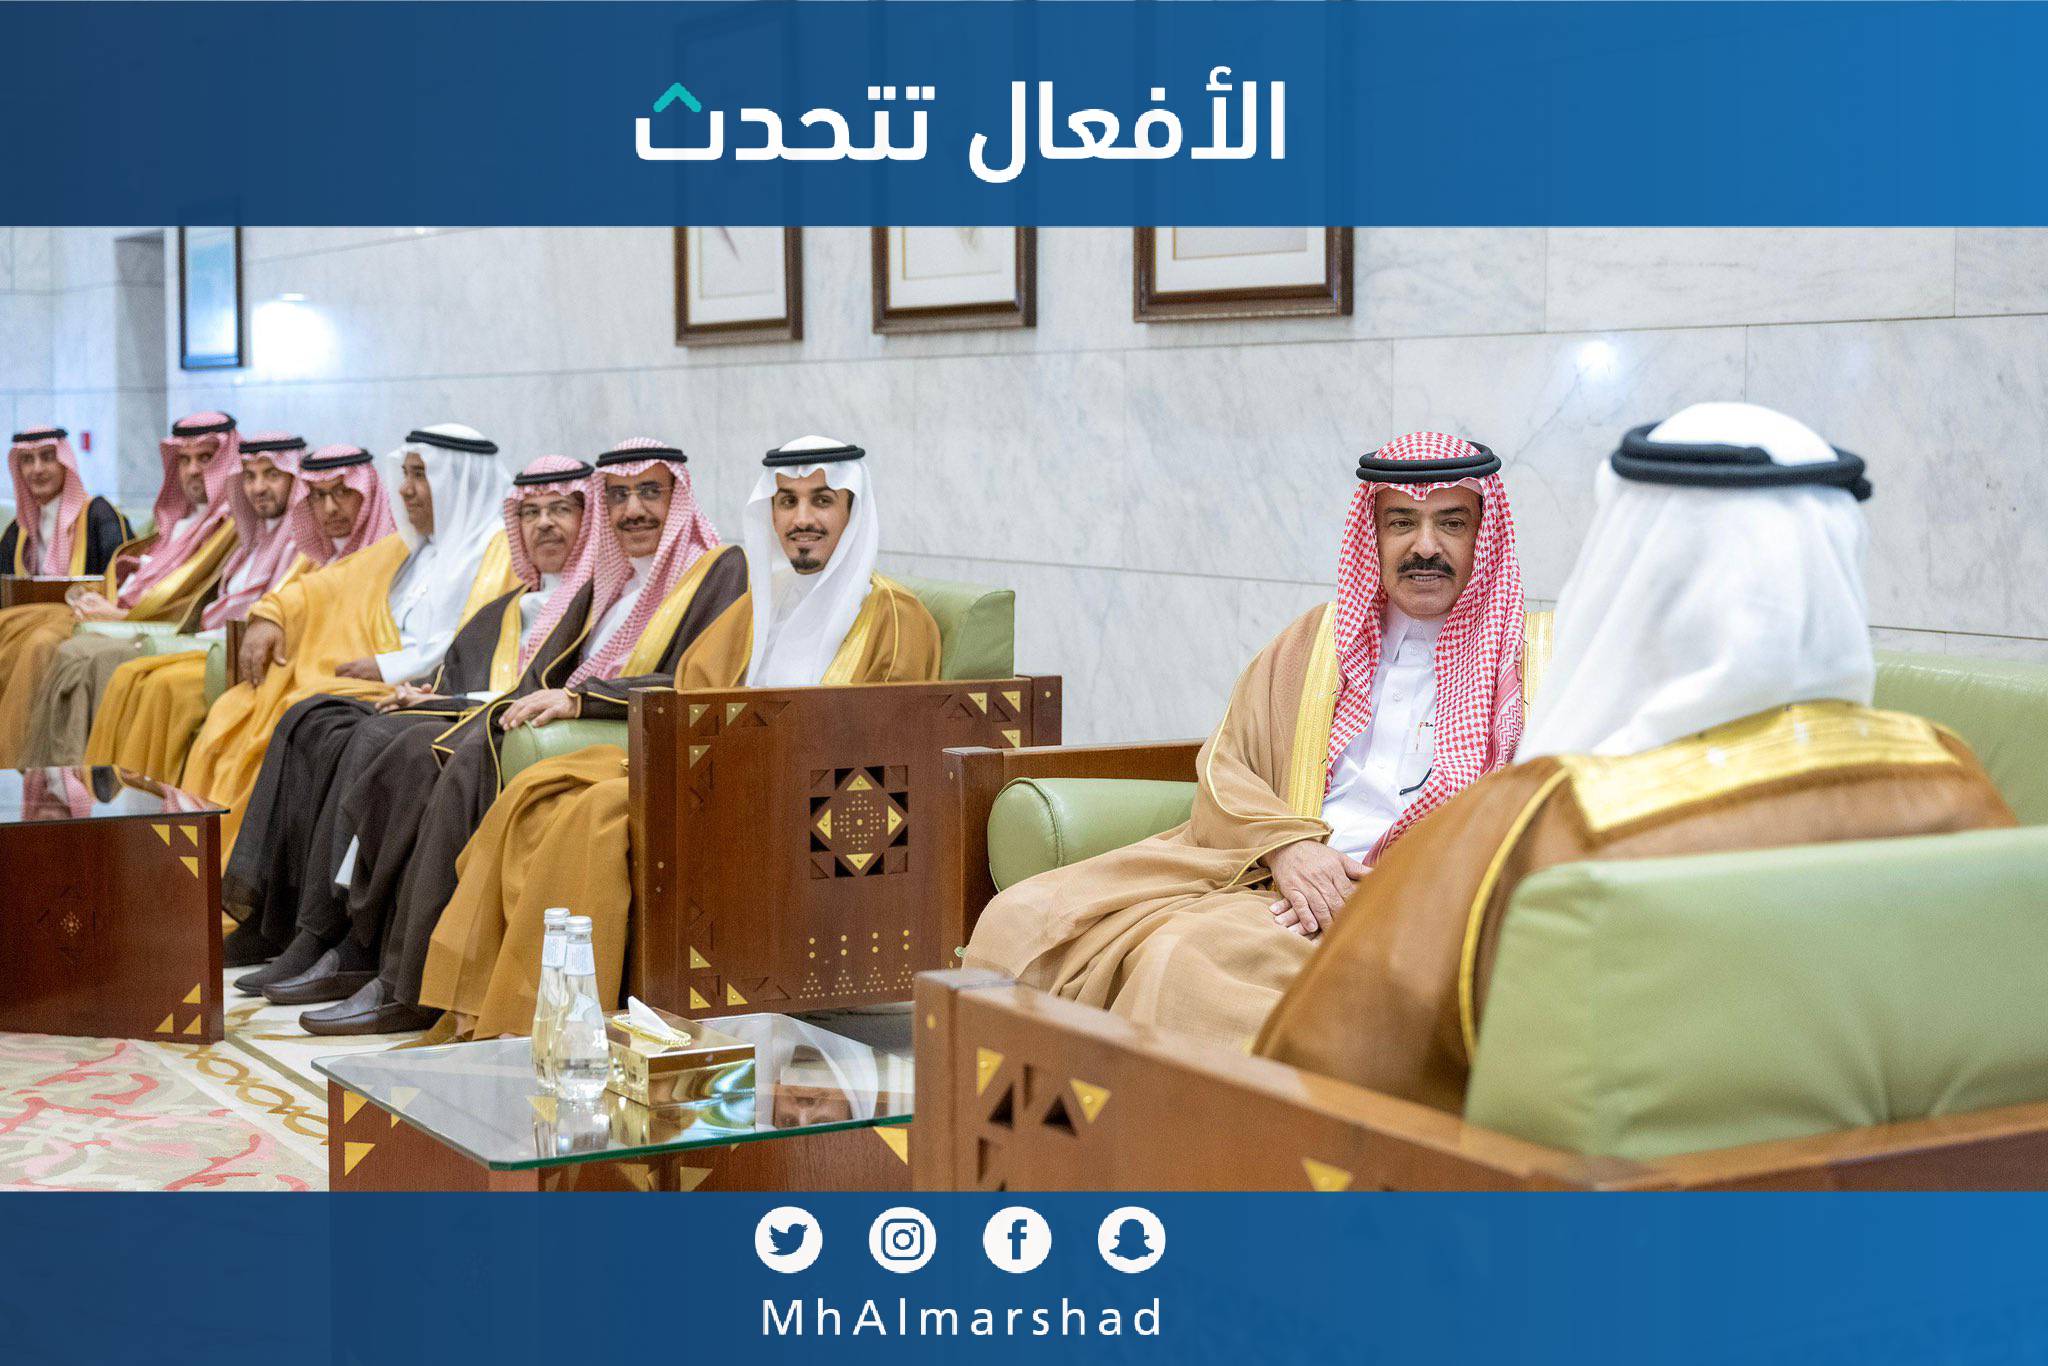 تشرفنا في مجلس إدارة غرفة الرياض بلقاء صاحب السمو الملكي الأمير فيصل بن بندر أمير منطقة الرياض لإيصال التهنئة لسموه بمناسبة ذكرى اليوم الوطني السعودي 93